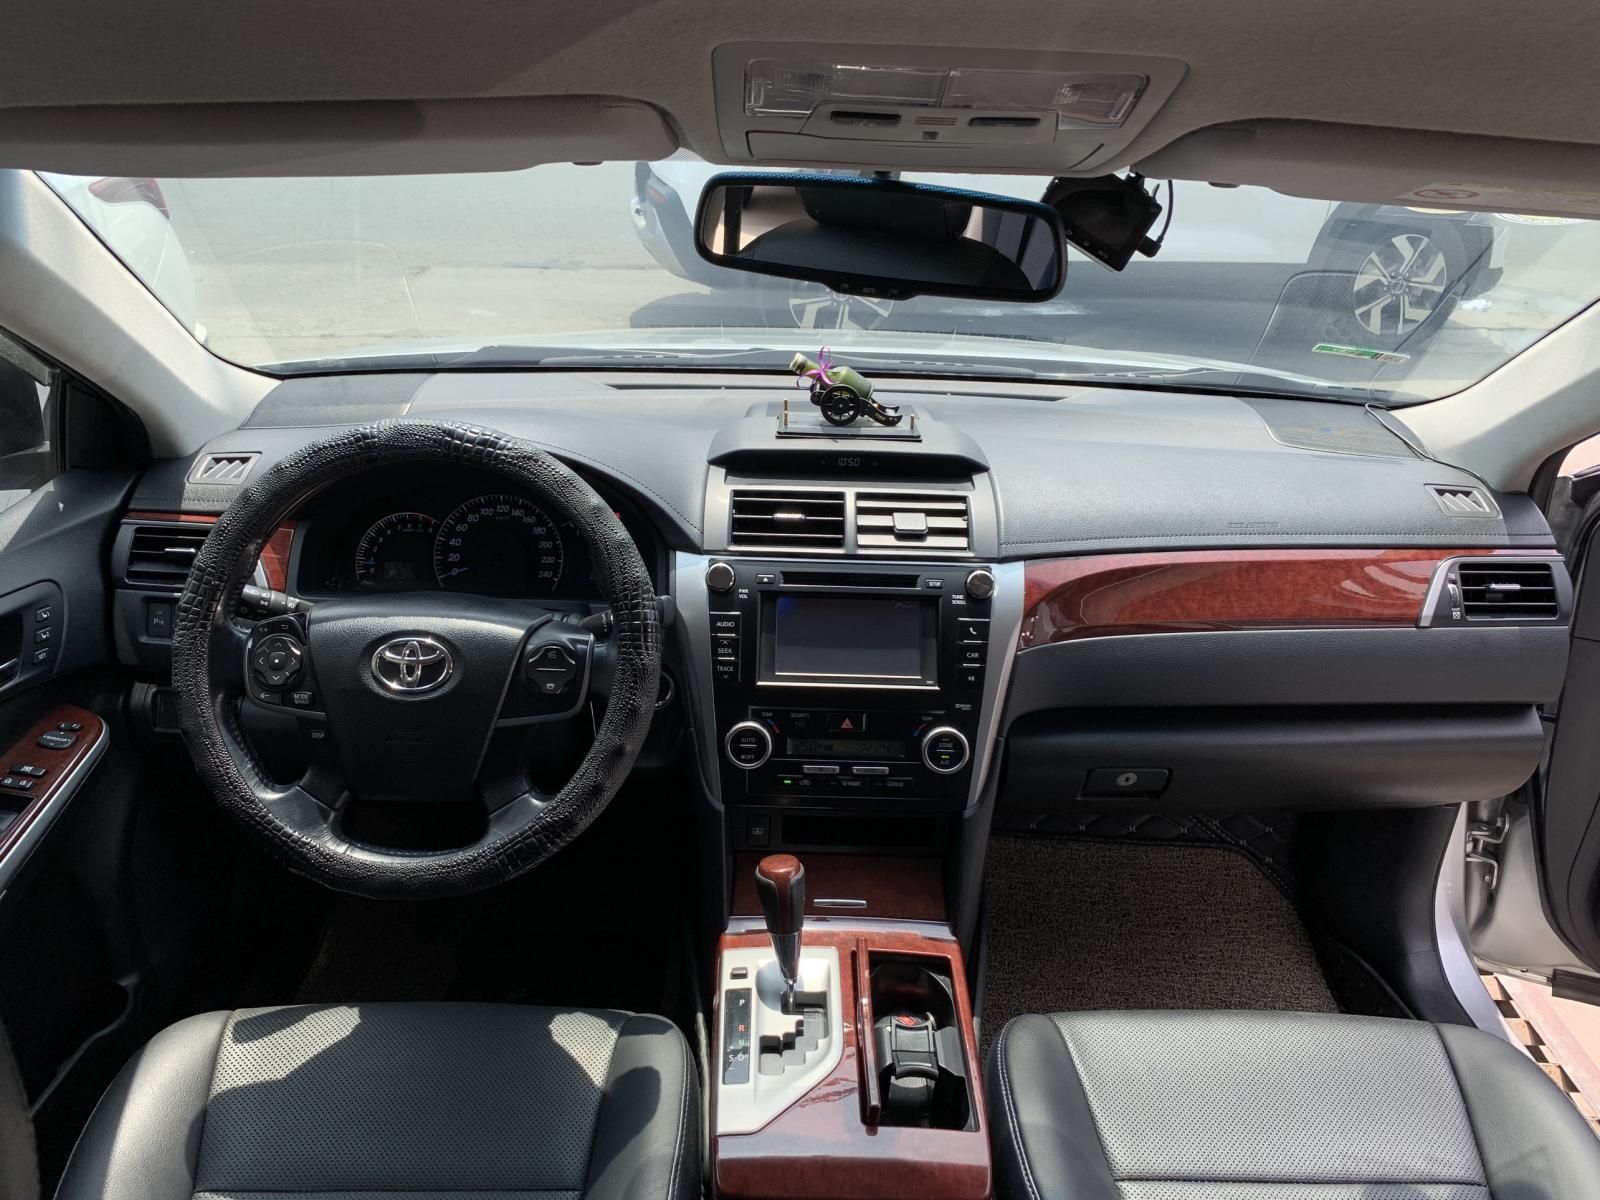 Toyota Camry 2014 - 9 năm đẹp cỡ nào với giá 605tr tại Siêu Thị Ô Tô Hà Nội